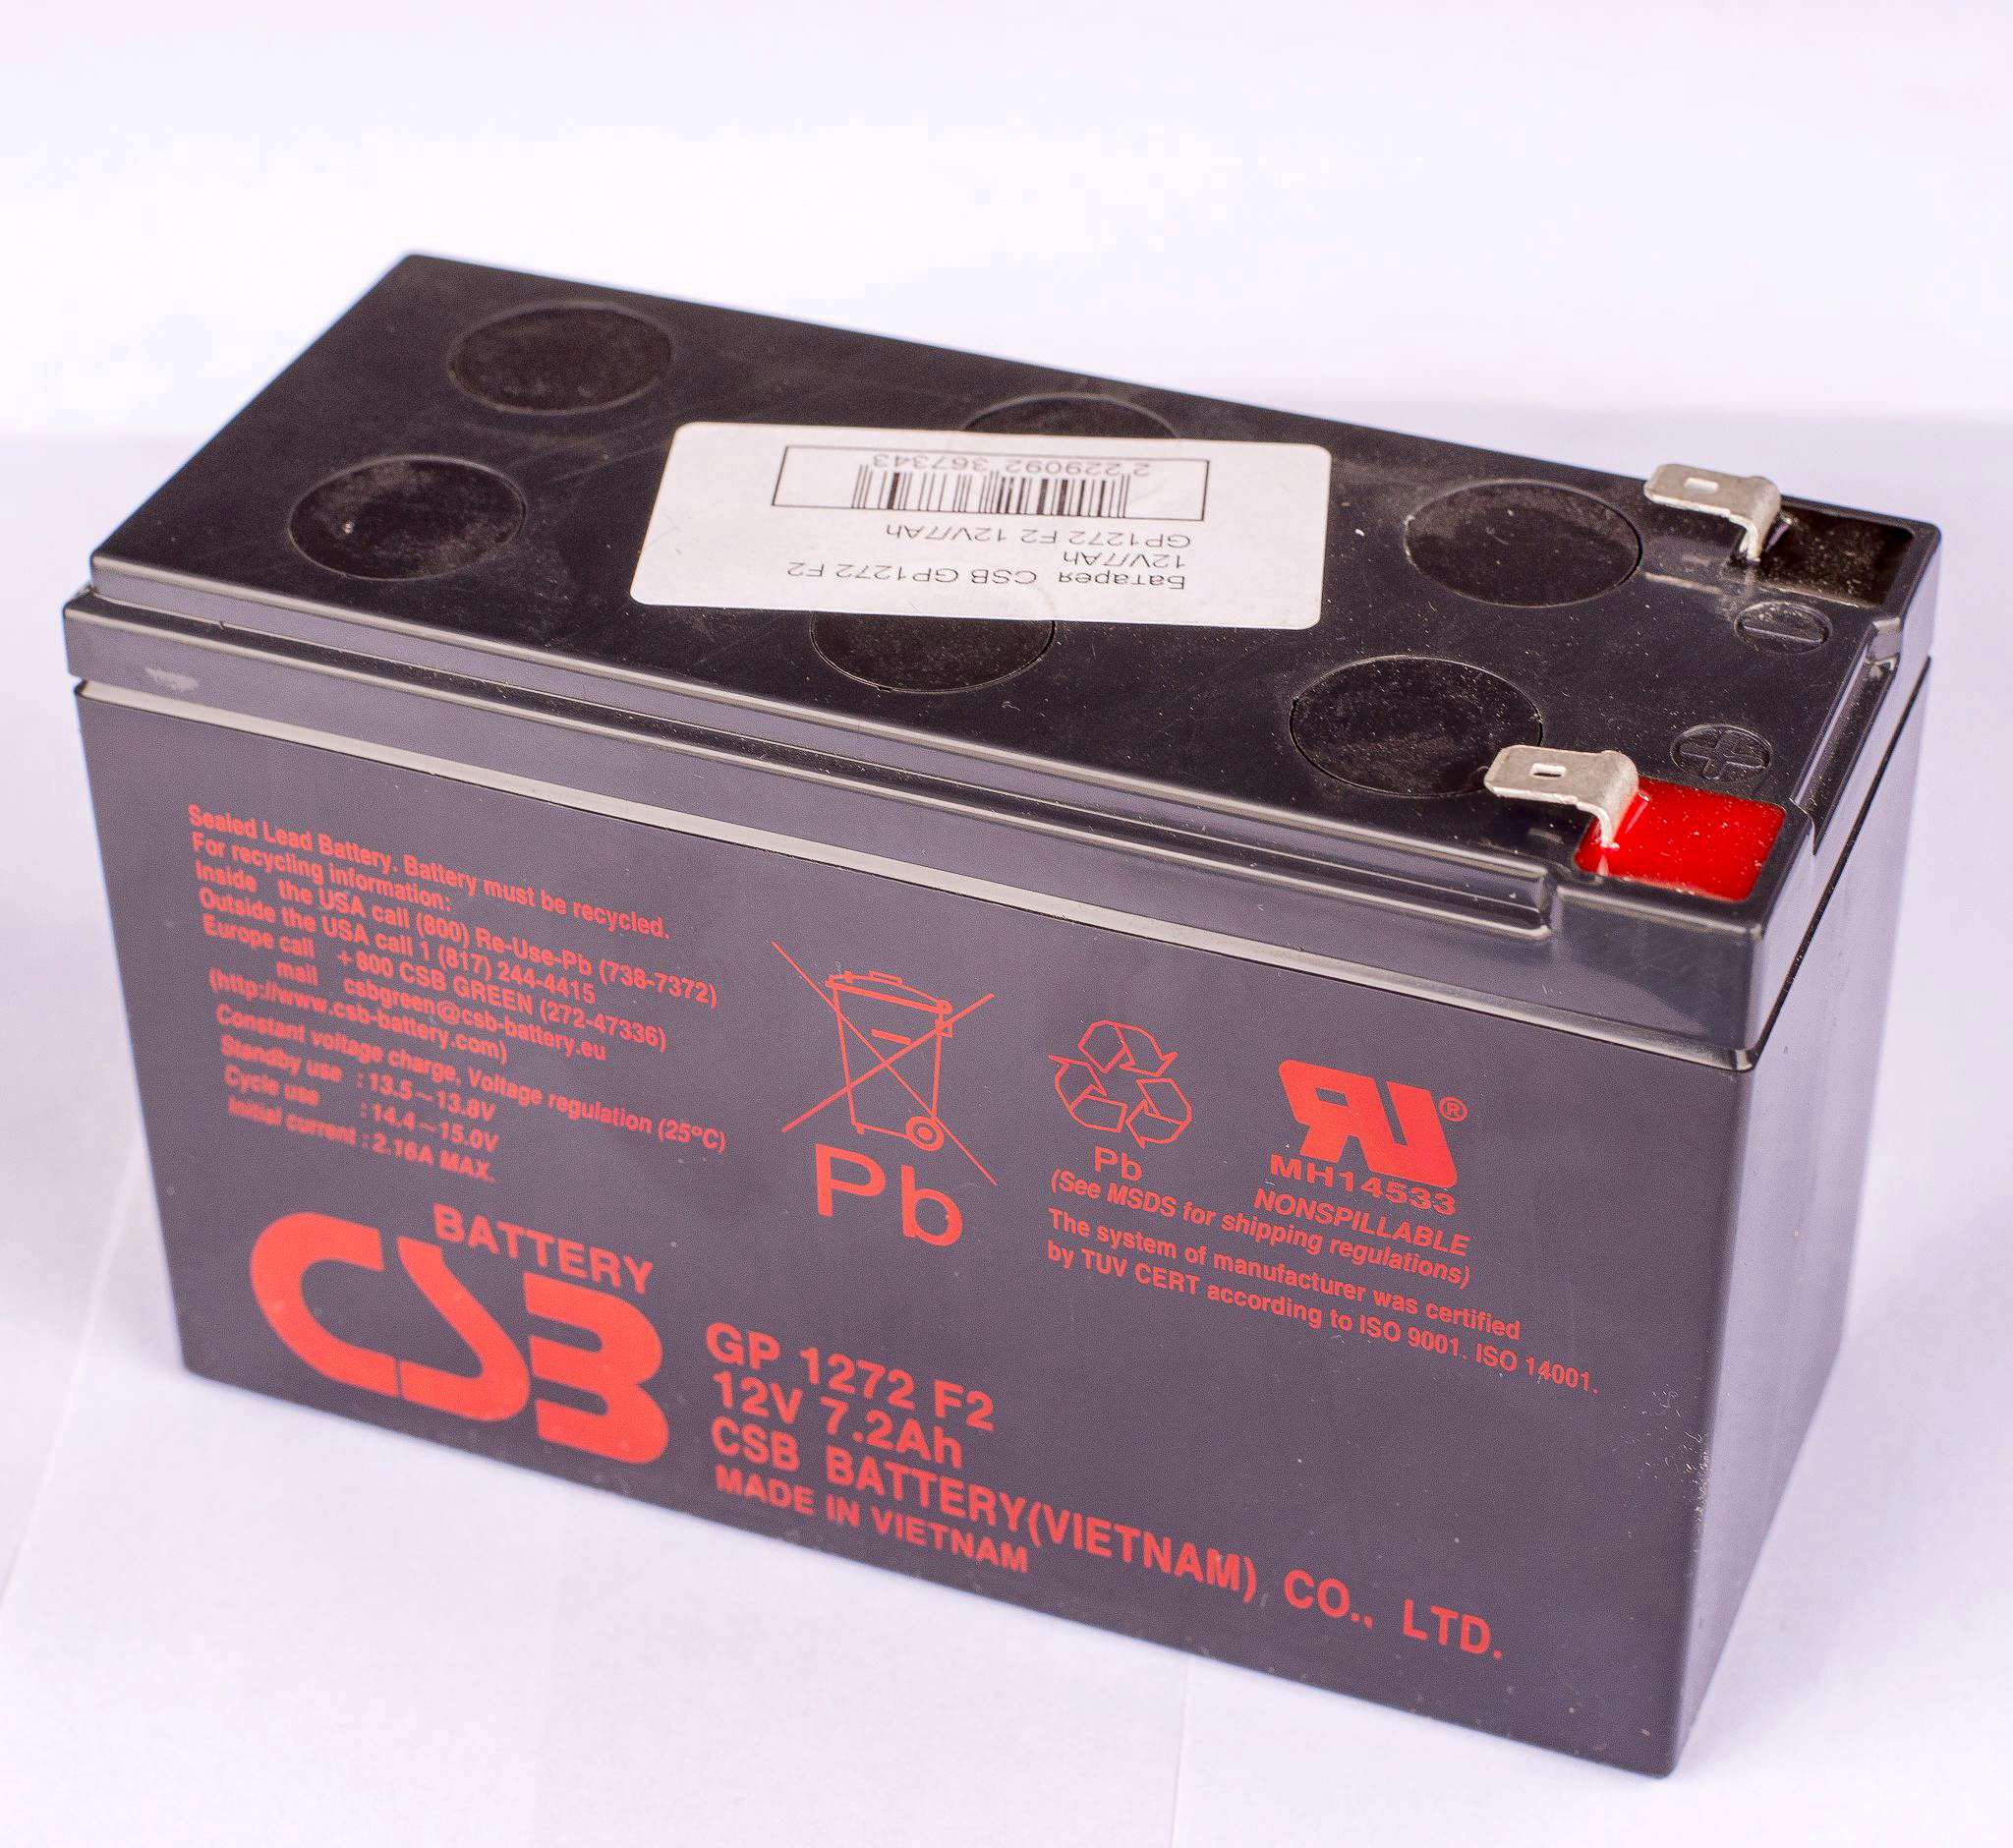 Gp 1272 12v. Аккумуляторная батарея для ИБП CSB GP 1272 f2 12v 7.2Ah. Аккумуляторная батарея CSB gp1272 f2. Батарея аккумуляторная CSB GP 1272 f2 12в 7.2а/ч. Батарея аккумуляторная CSB gp1272 (12v/7.2Ah).